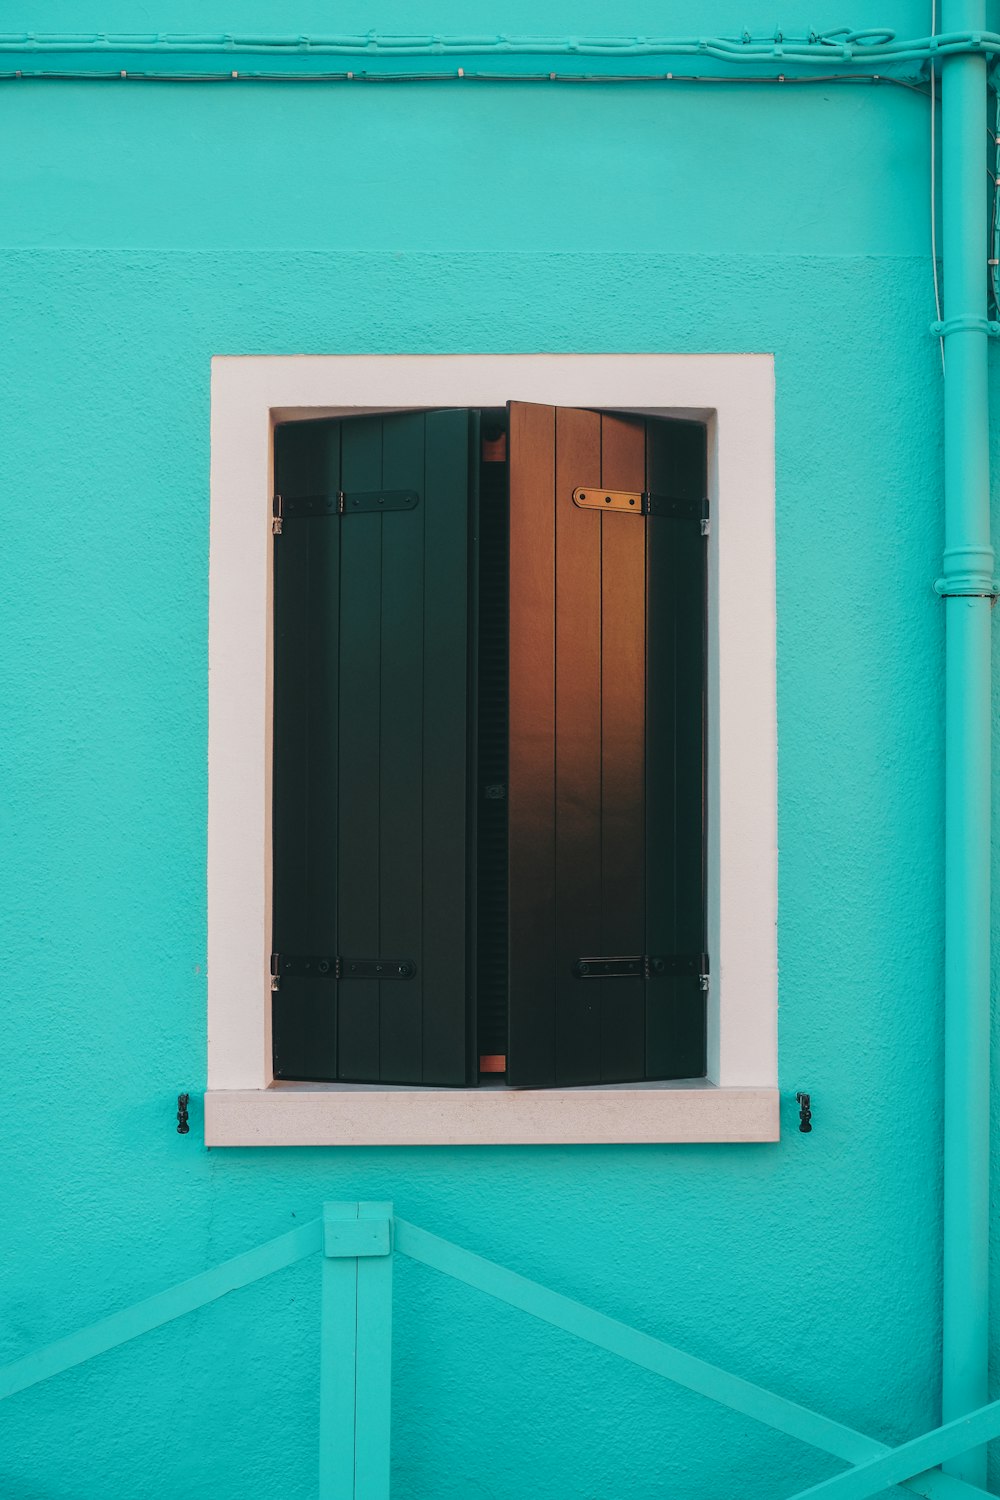 fenêtre en bois bleu sur mur de béton rose